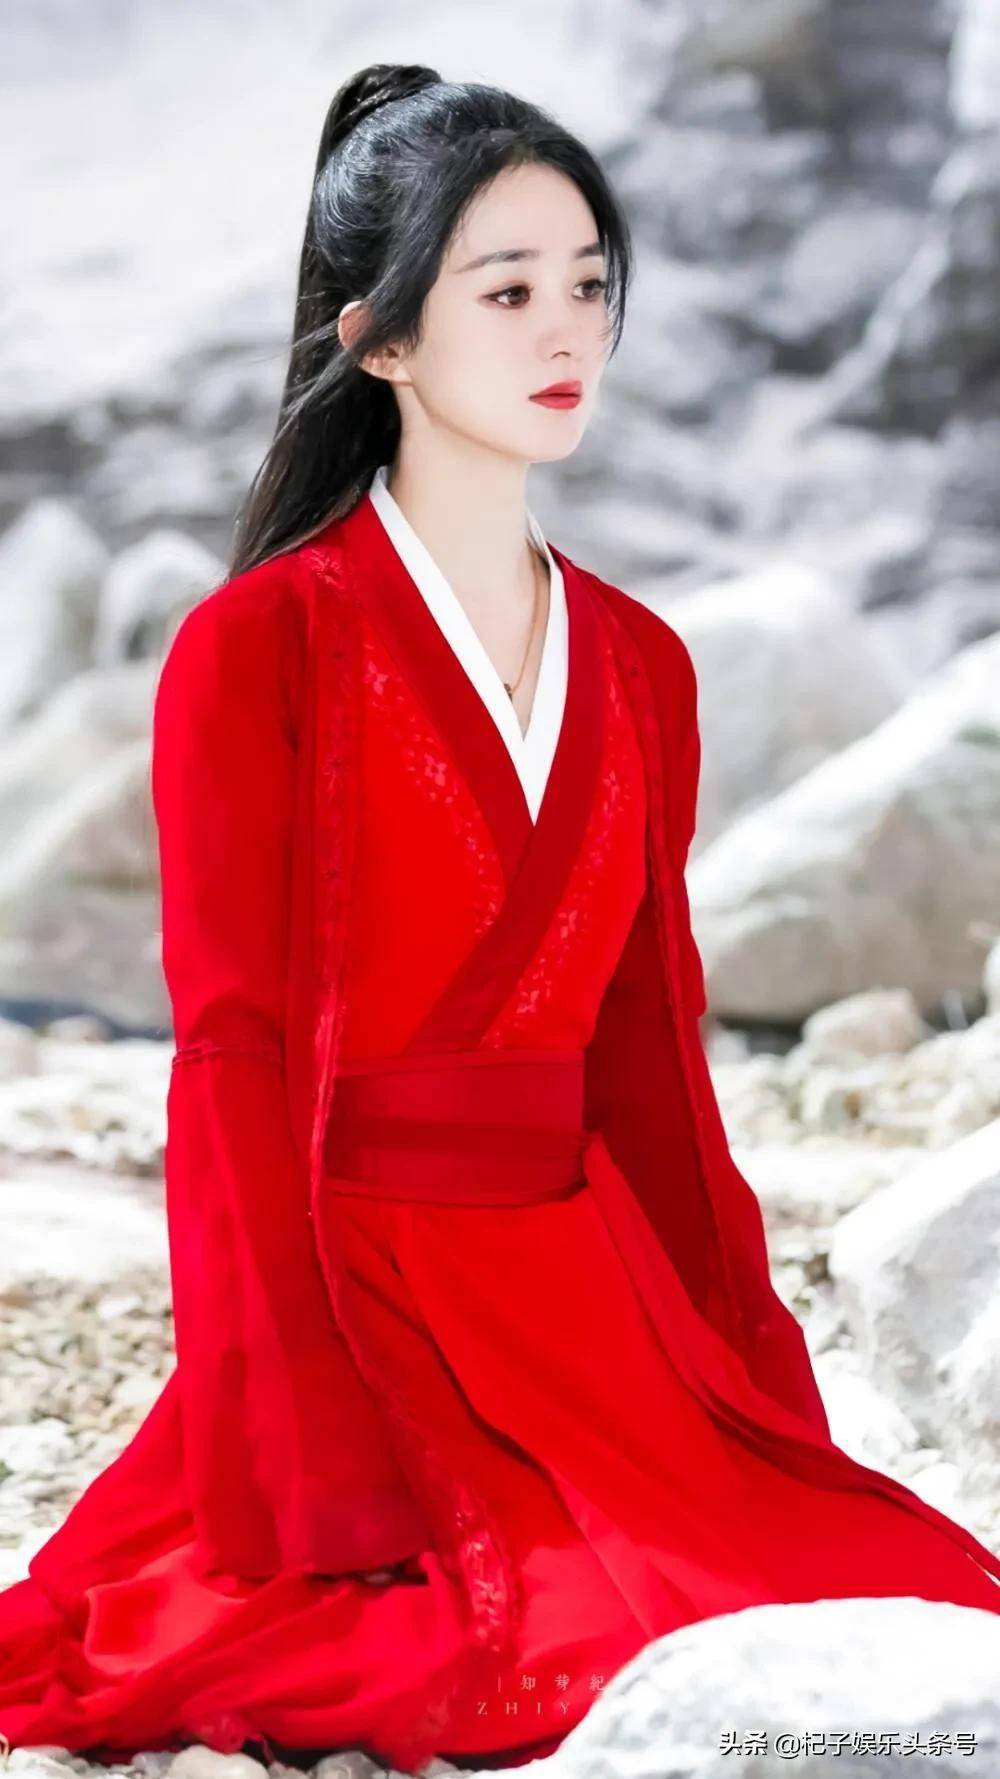 赵丽颖红衣造型合集:看惯了她平日的素雅风格,没想到红衣这么美